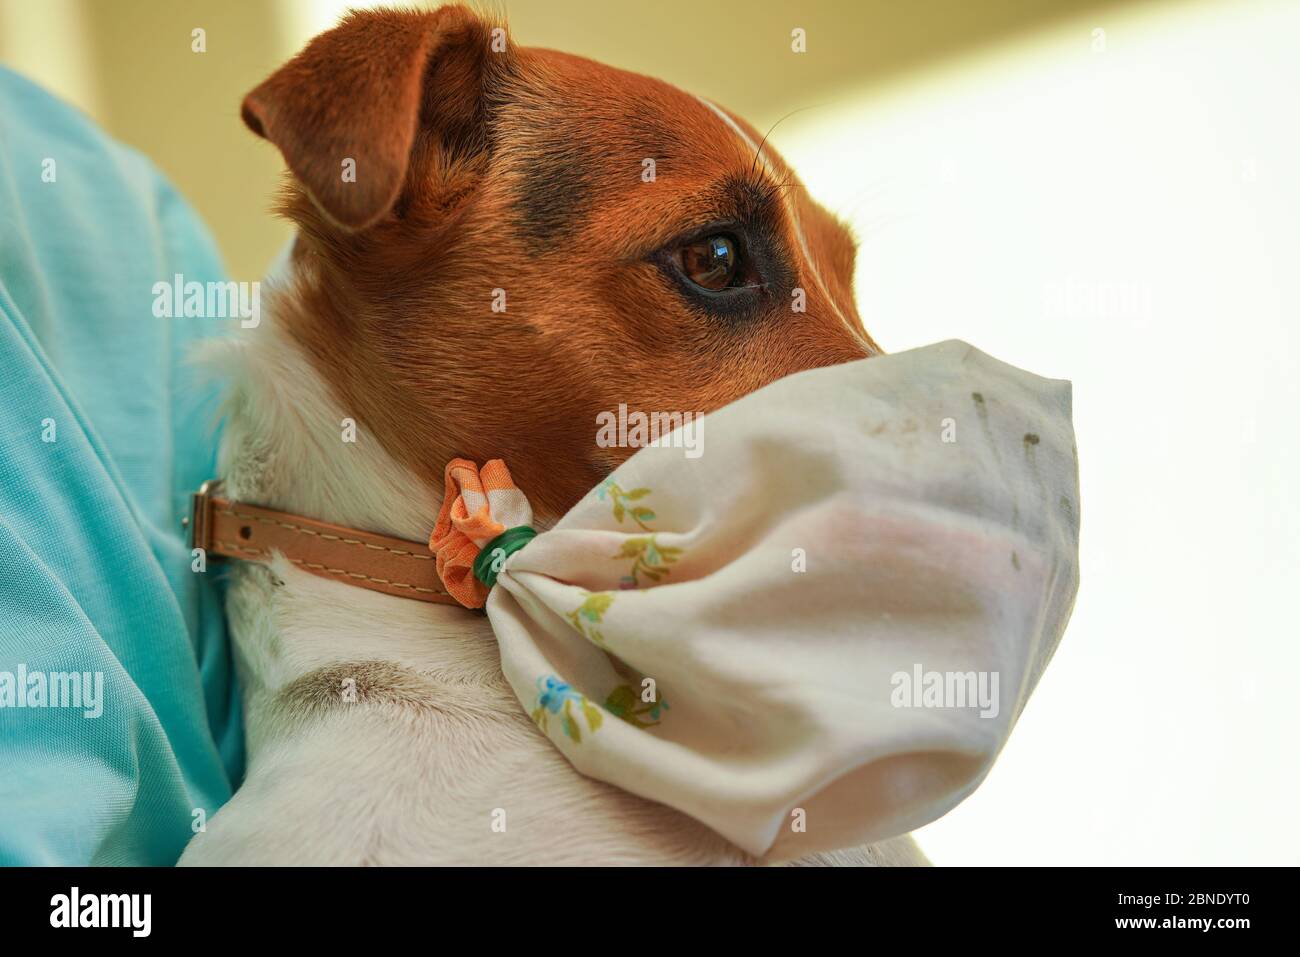 Kleine Jack Russell Terrier Hund trägt zu Hause gemacht einfache Baumwolle  Mund Virus Maske. Haustiere sind nicht anfällig für Coronavirus covid-19,  aber einige Besitzer prote Stockfotografie - Alamy